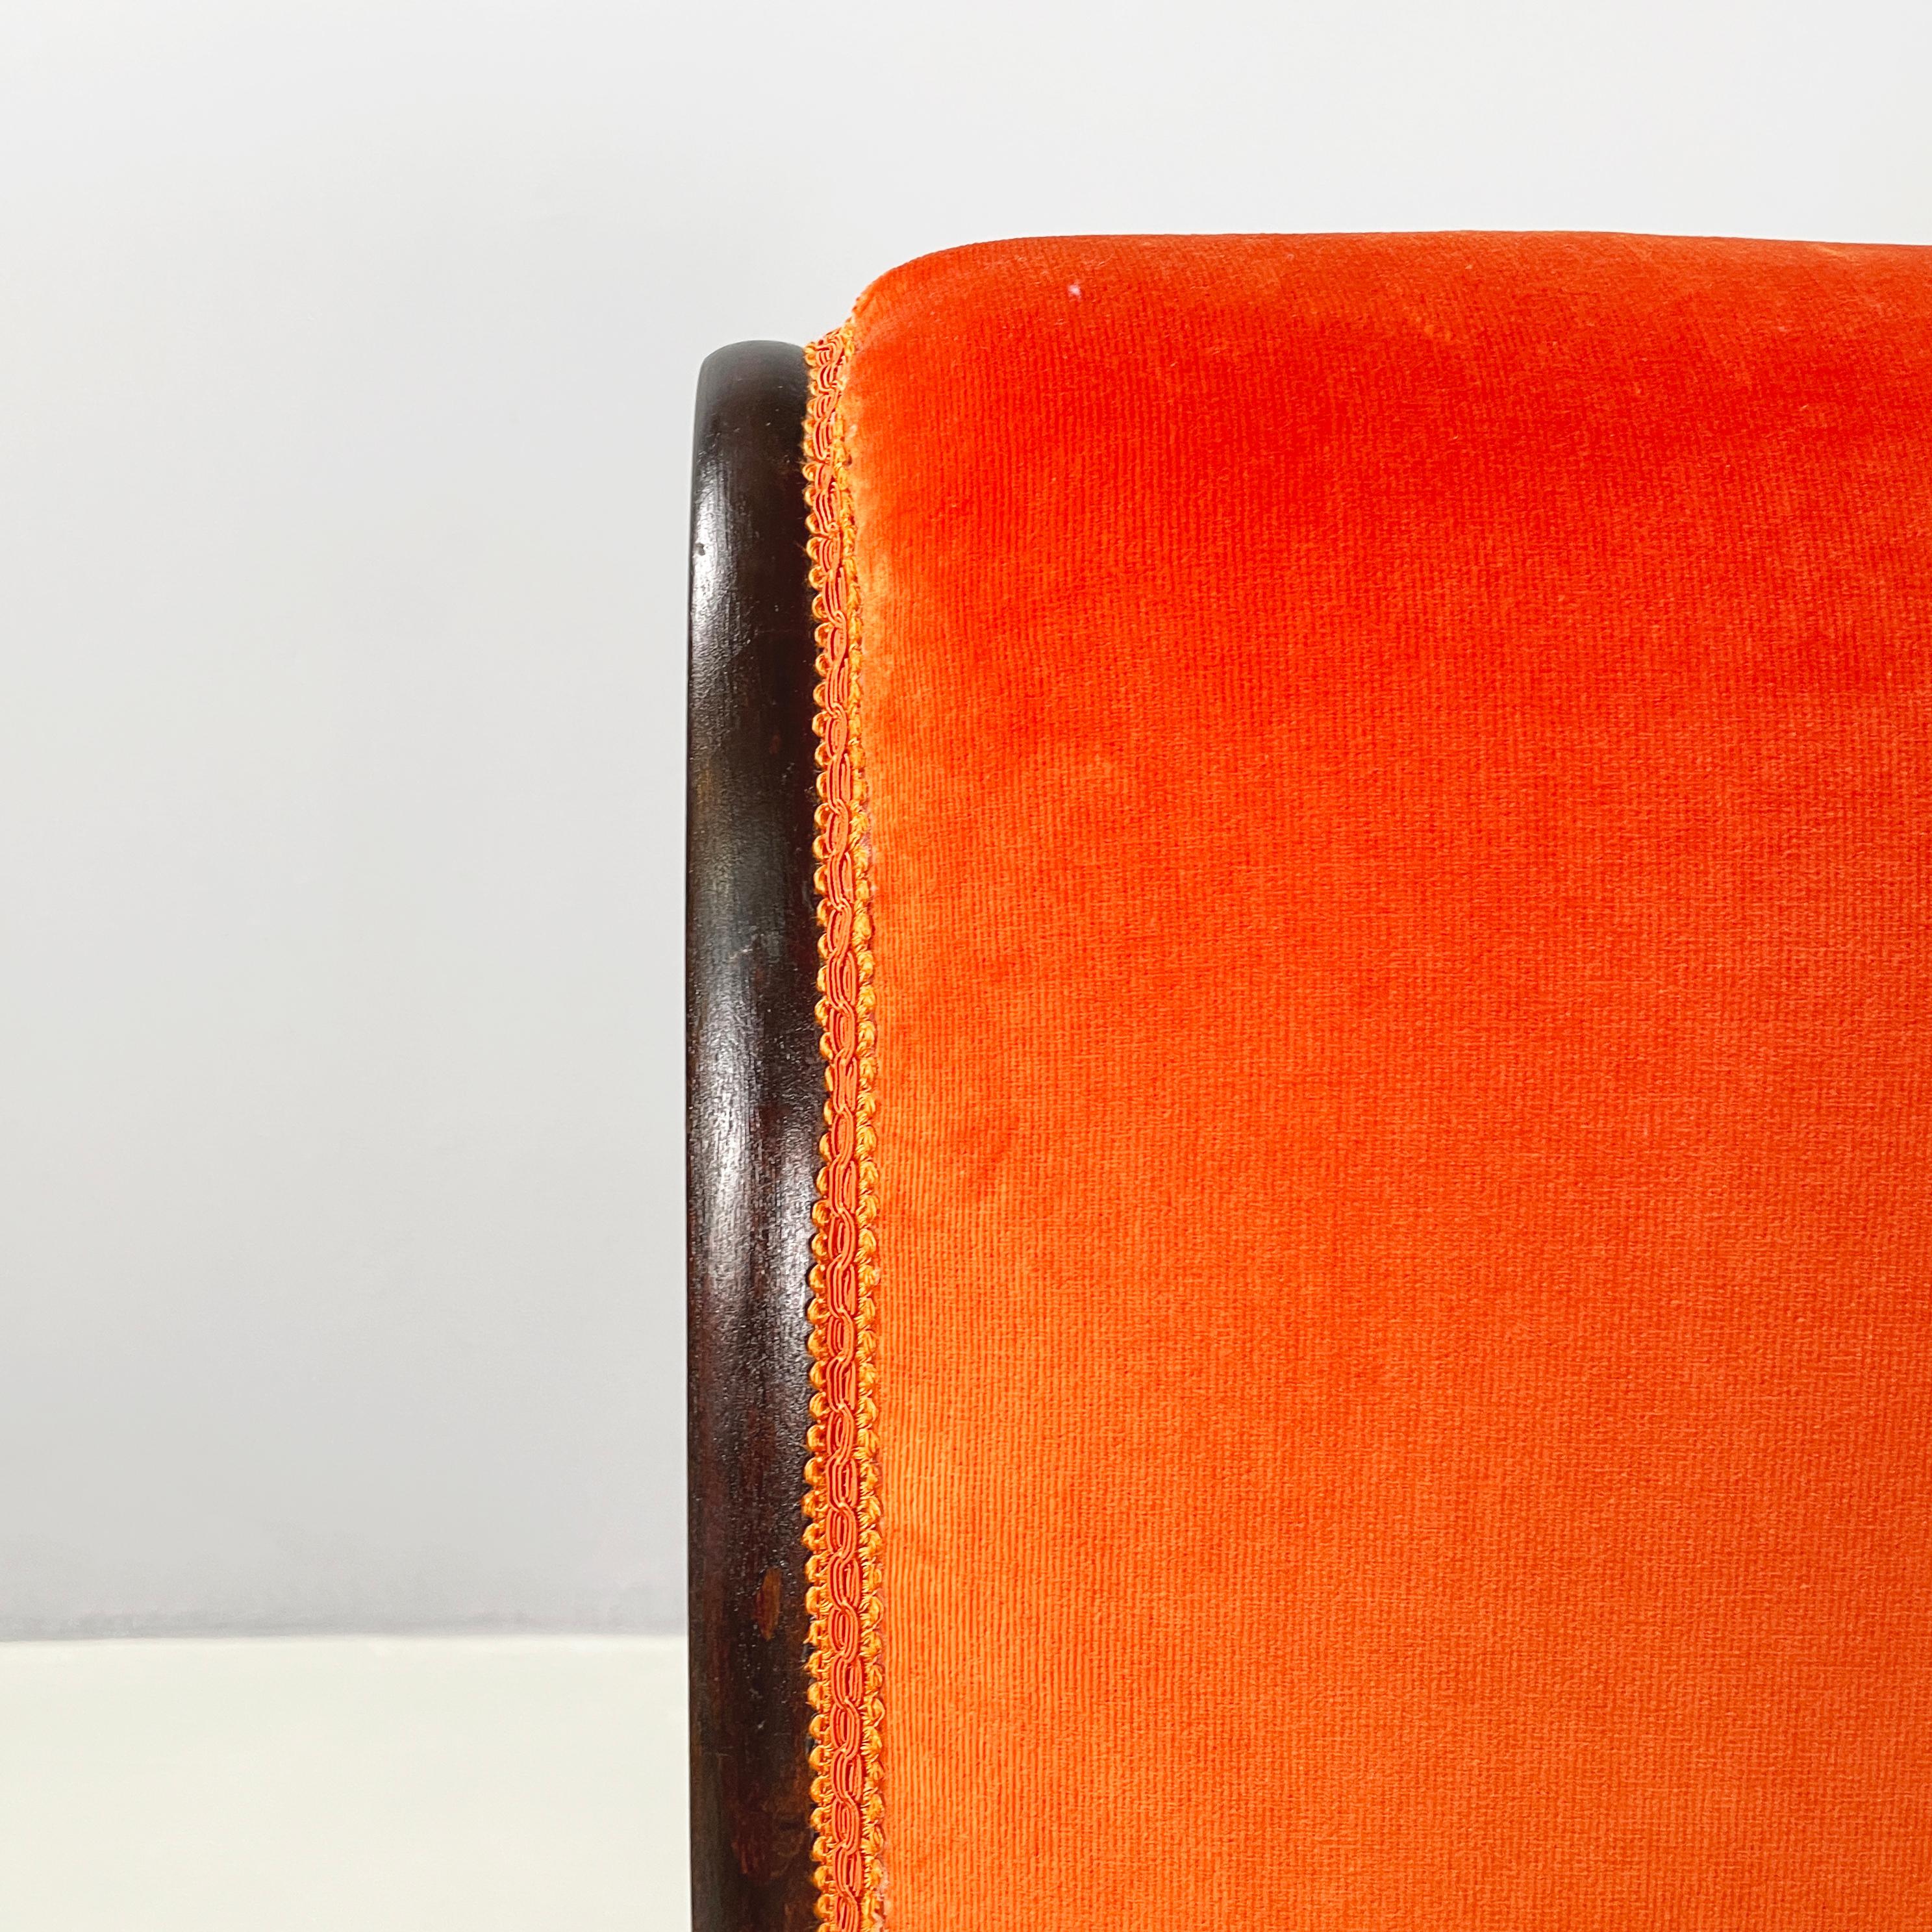 Danish mid-century modern Chair in orange velvet and dark wood, 1950s For Sale 2